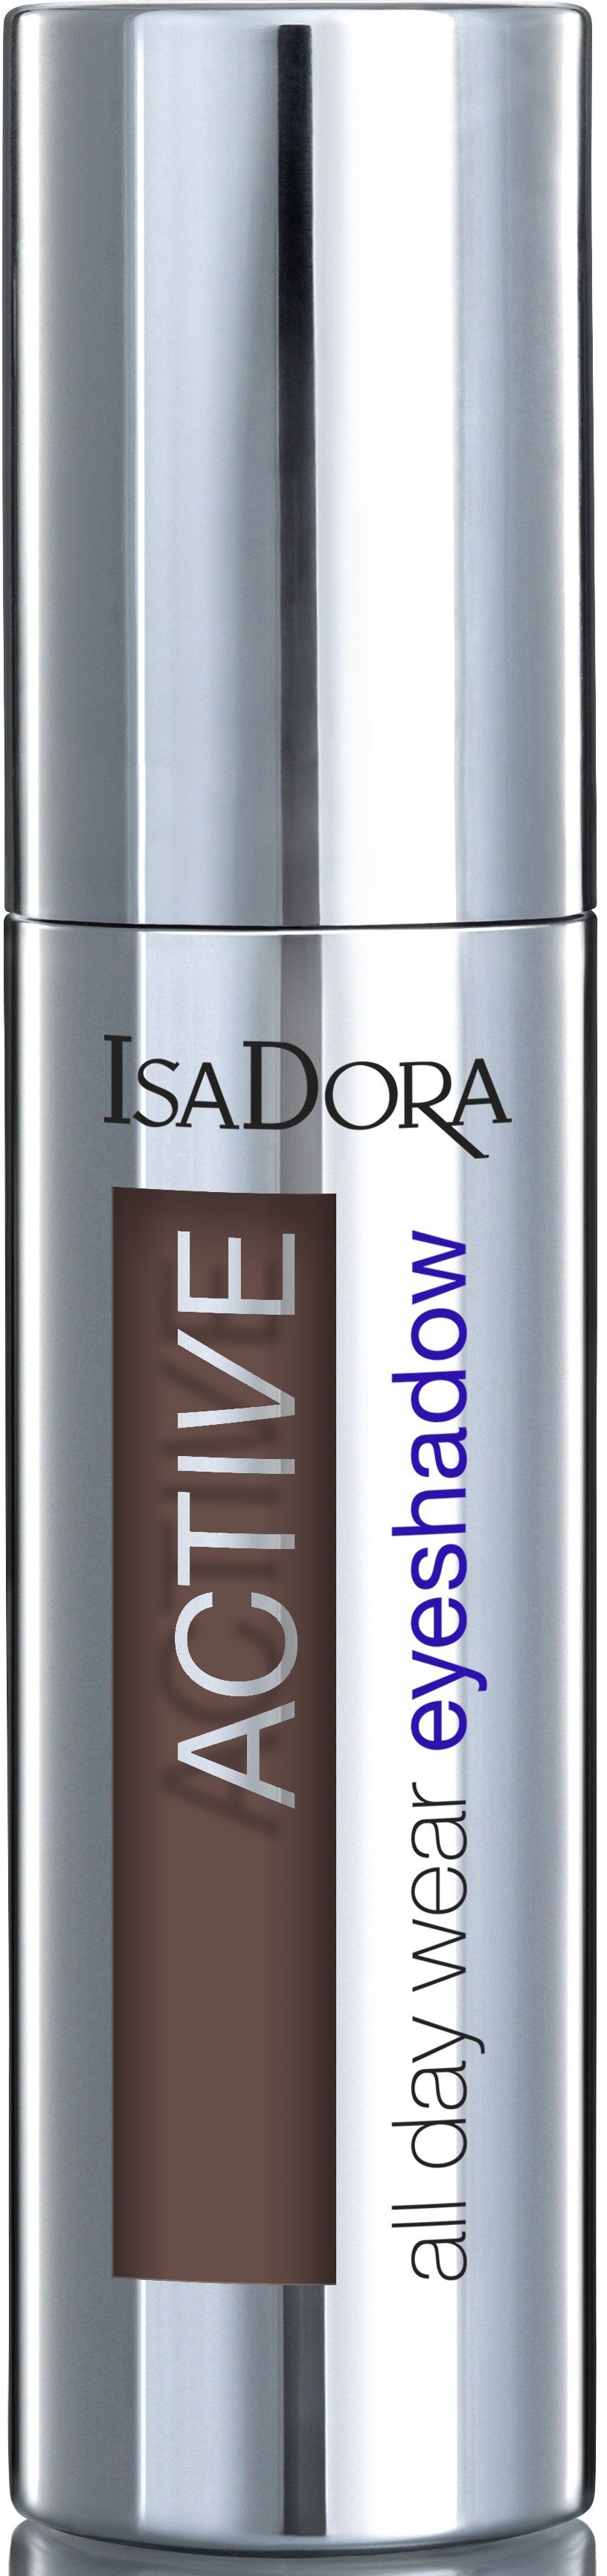 Isadora Active All Day Wear Eyeshadow - 04 Marsala